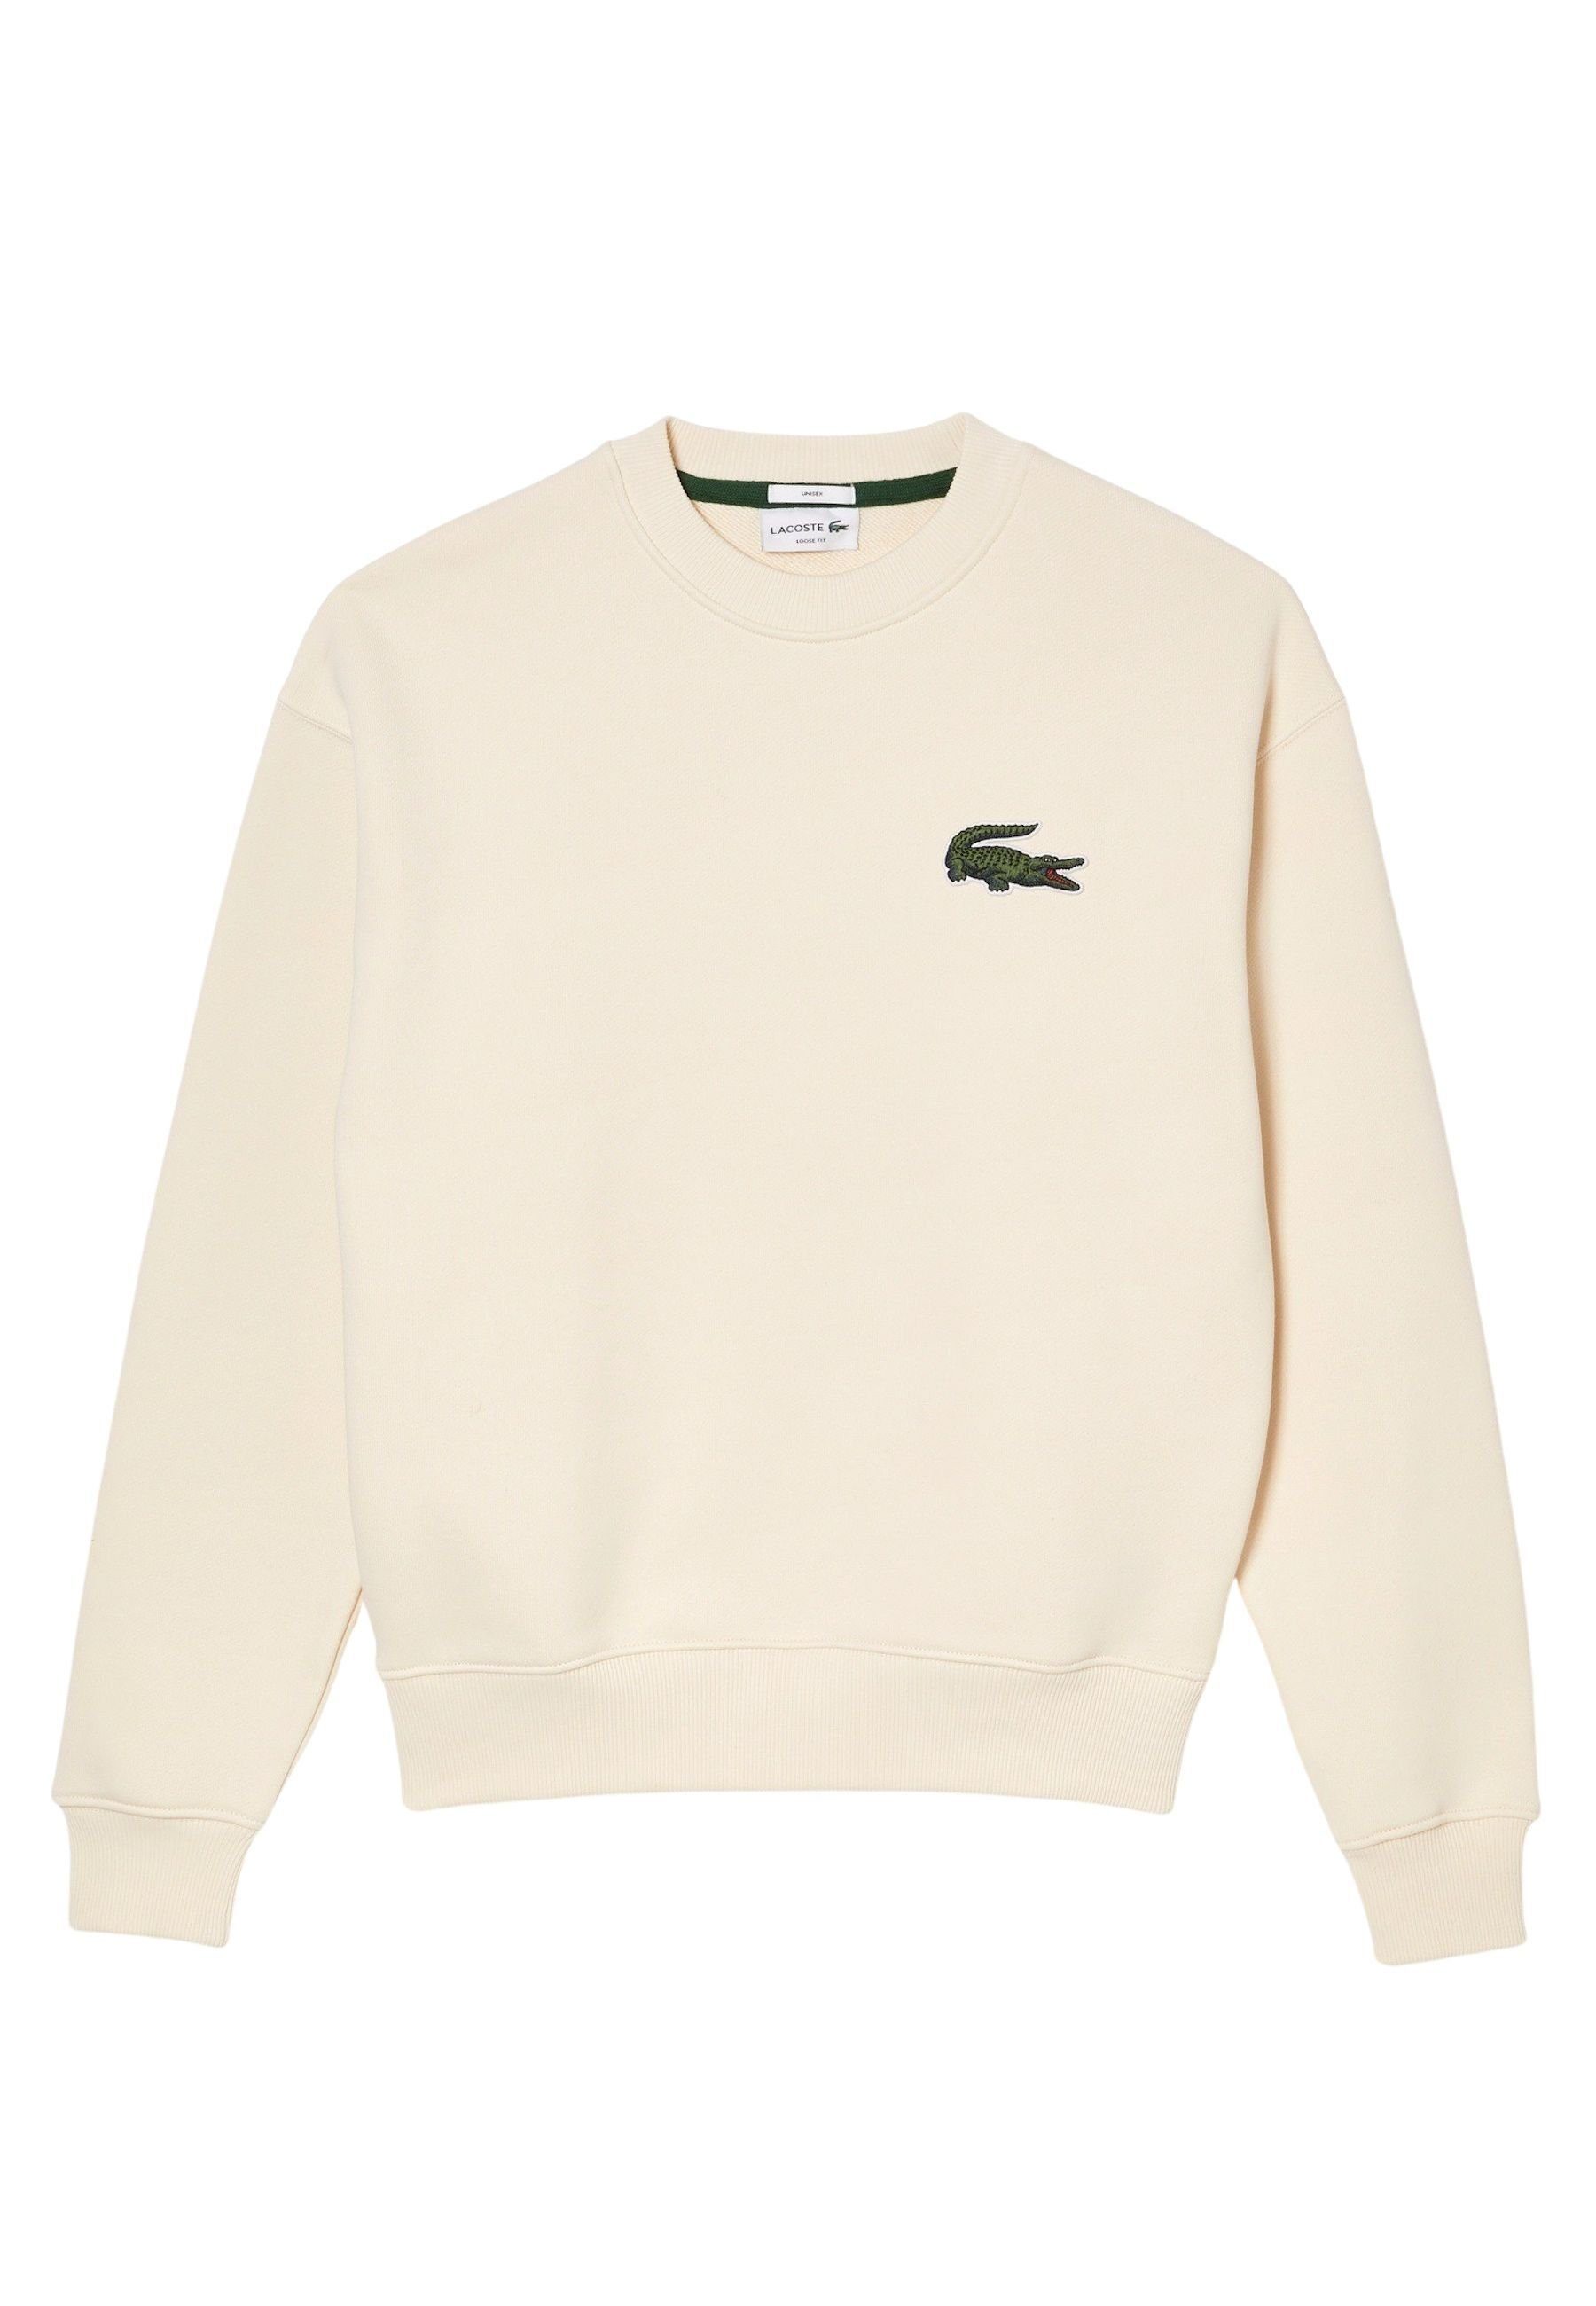 Lacoste Sport Sweatshirts online kaufen | OTTO